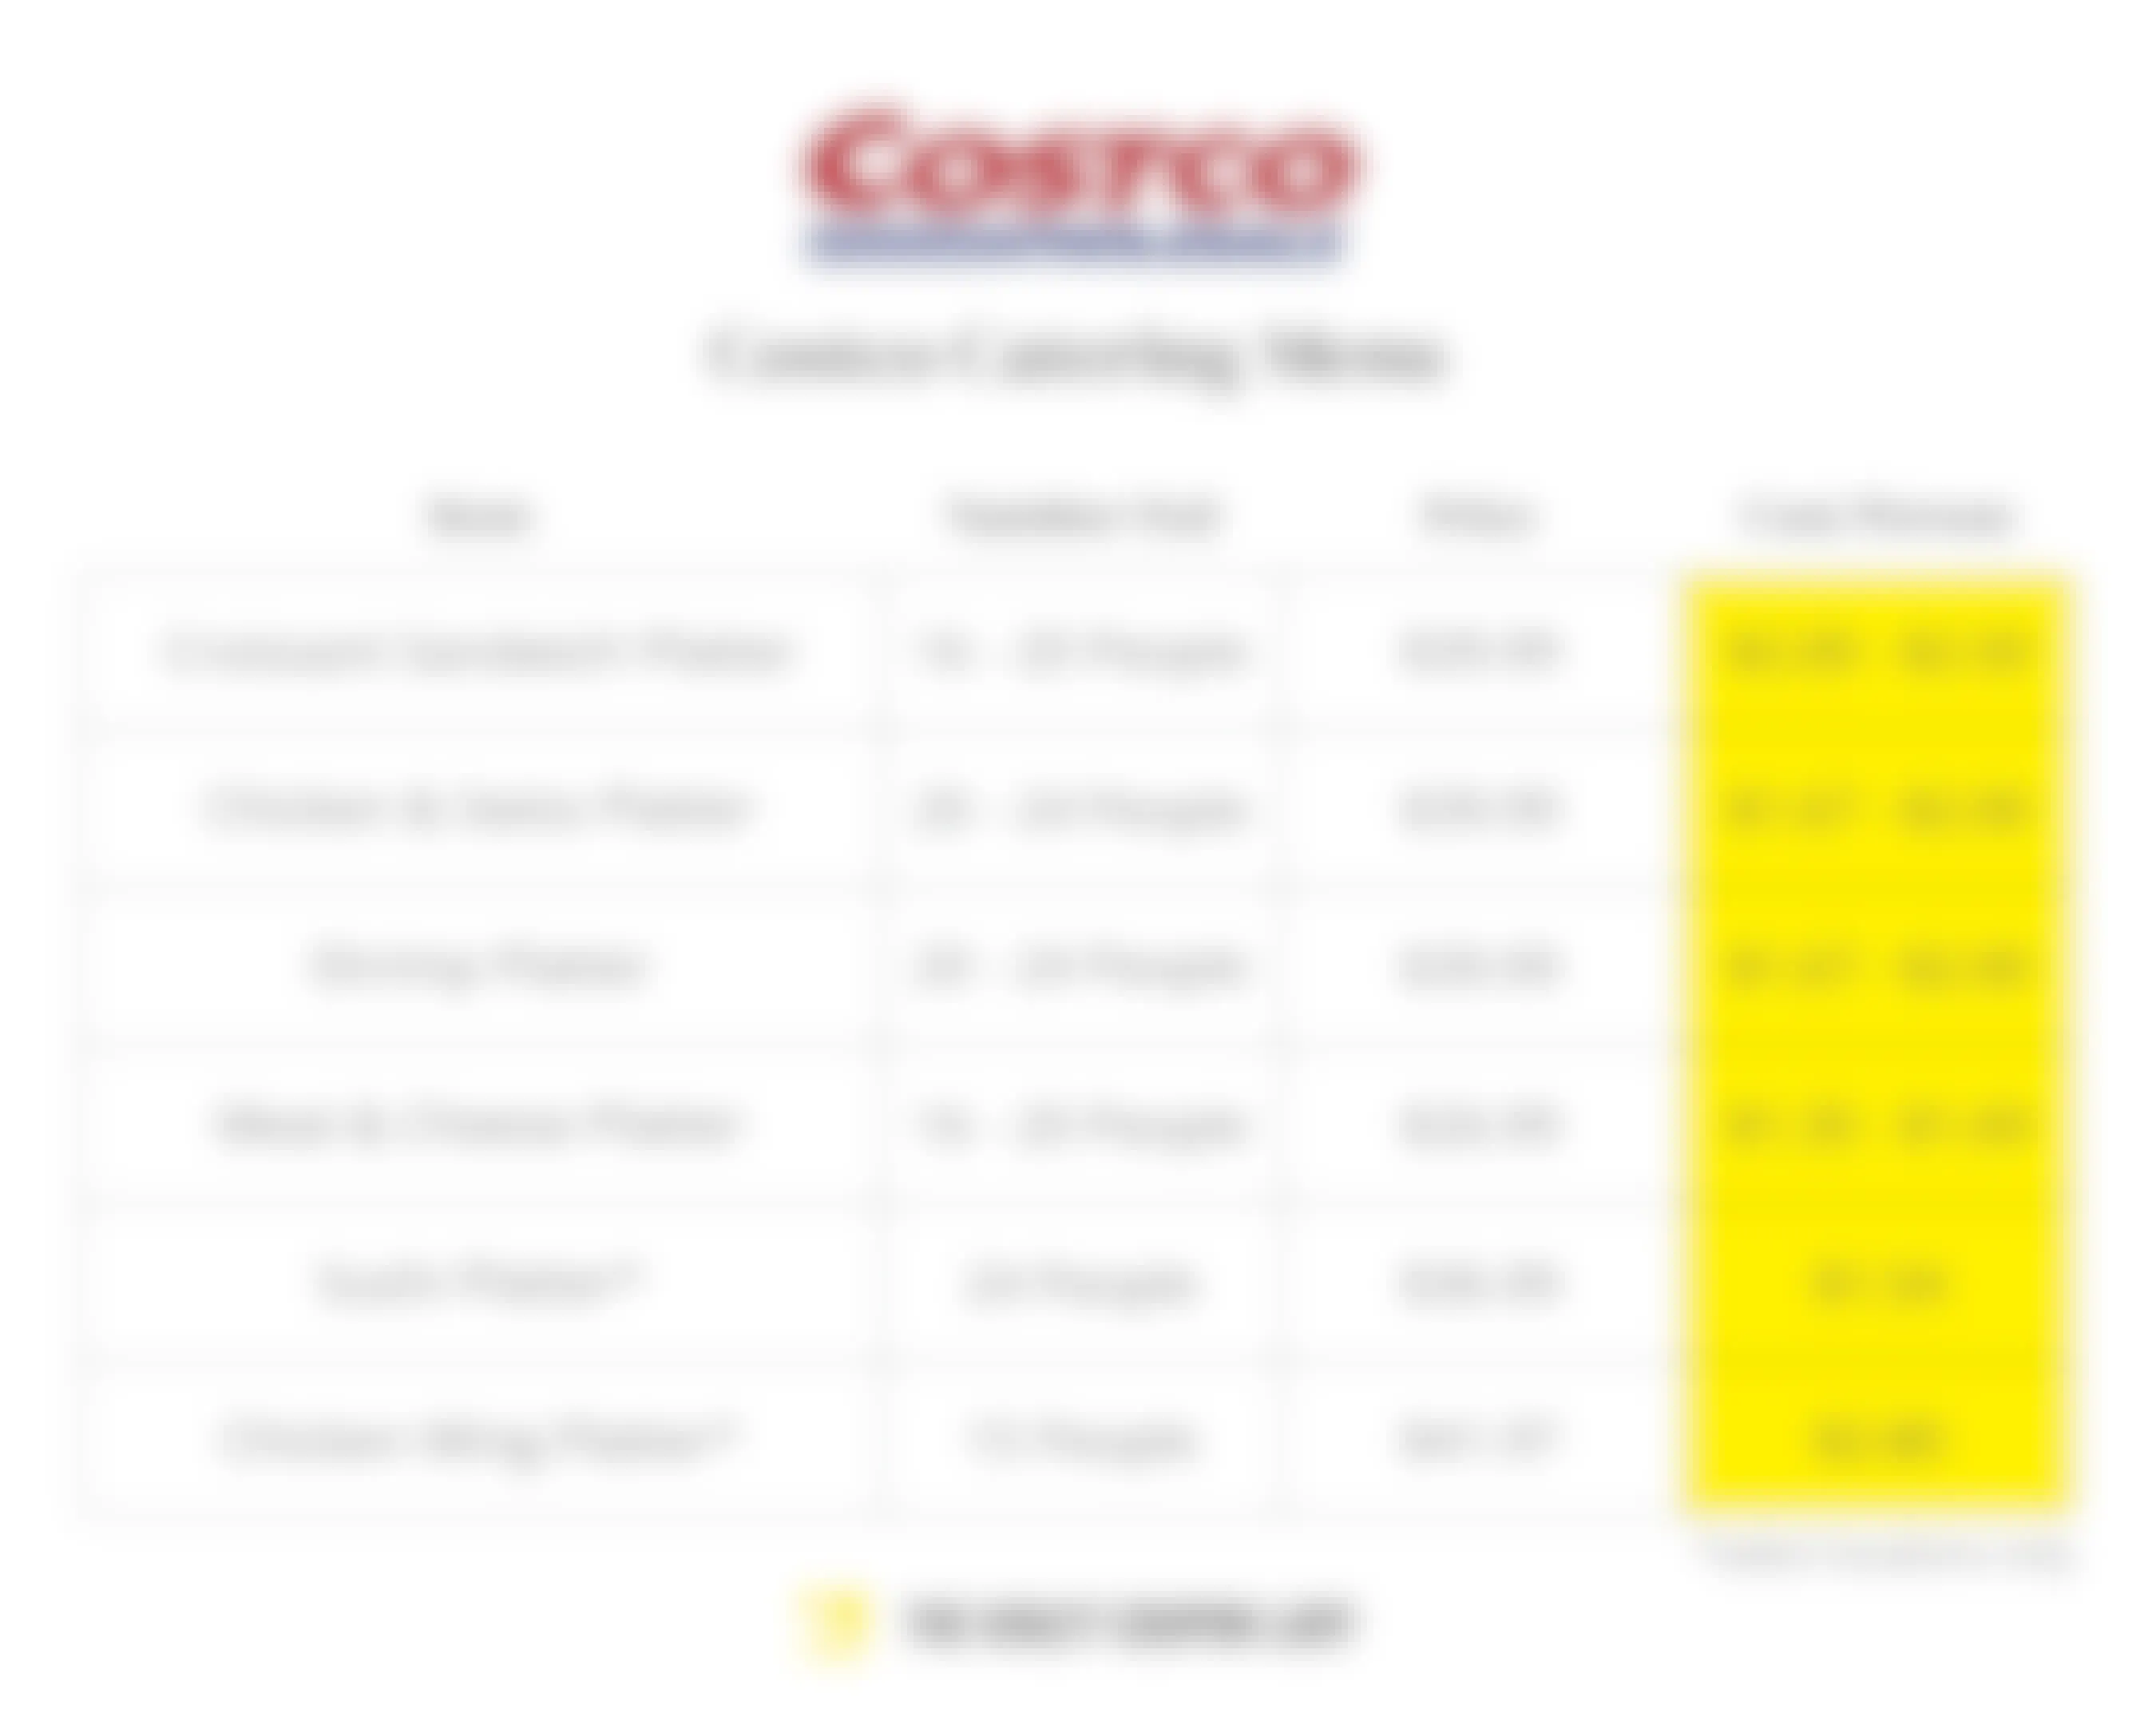 Costco Catering menu prices and cost per person.